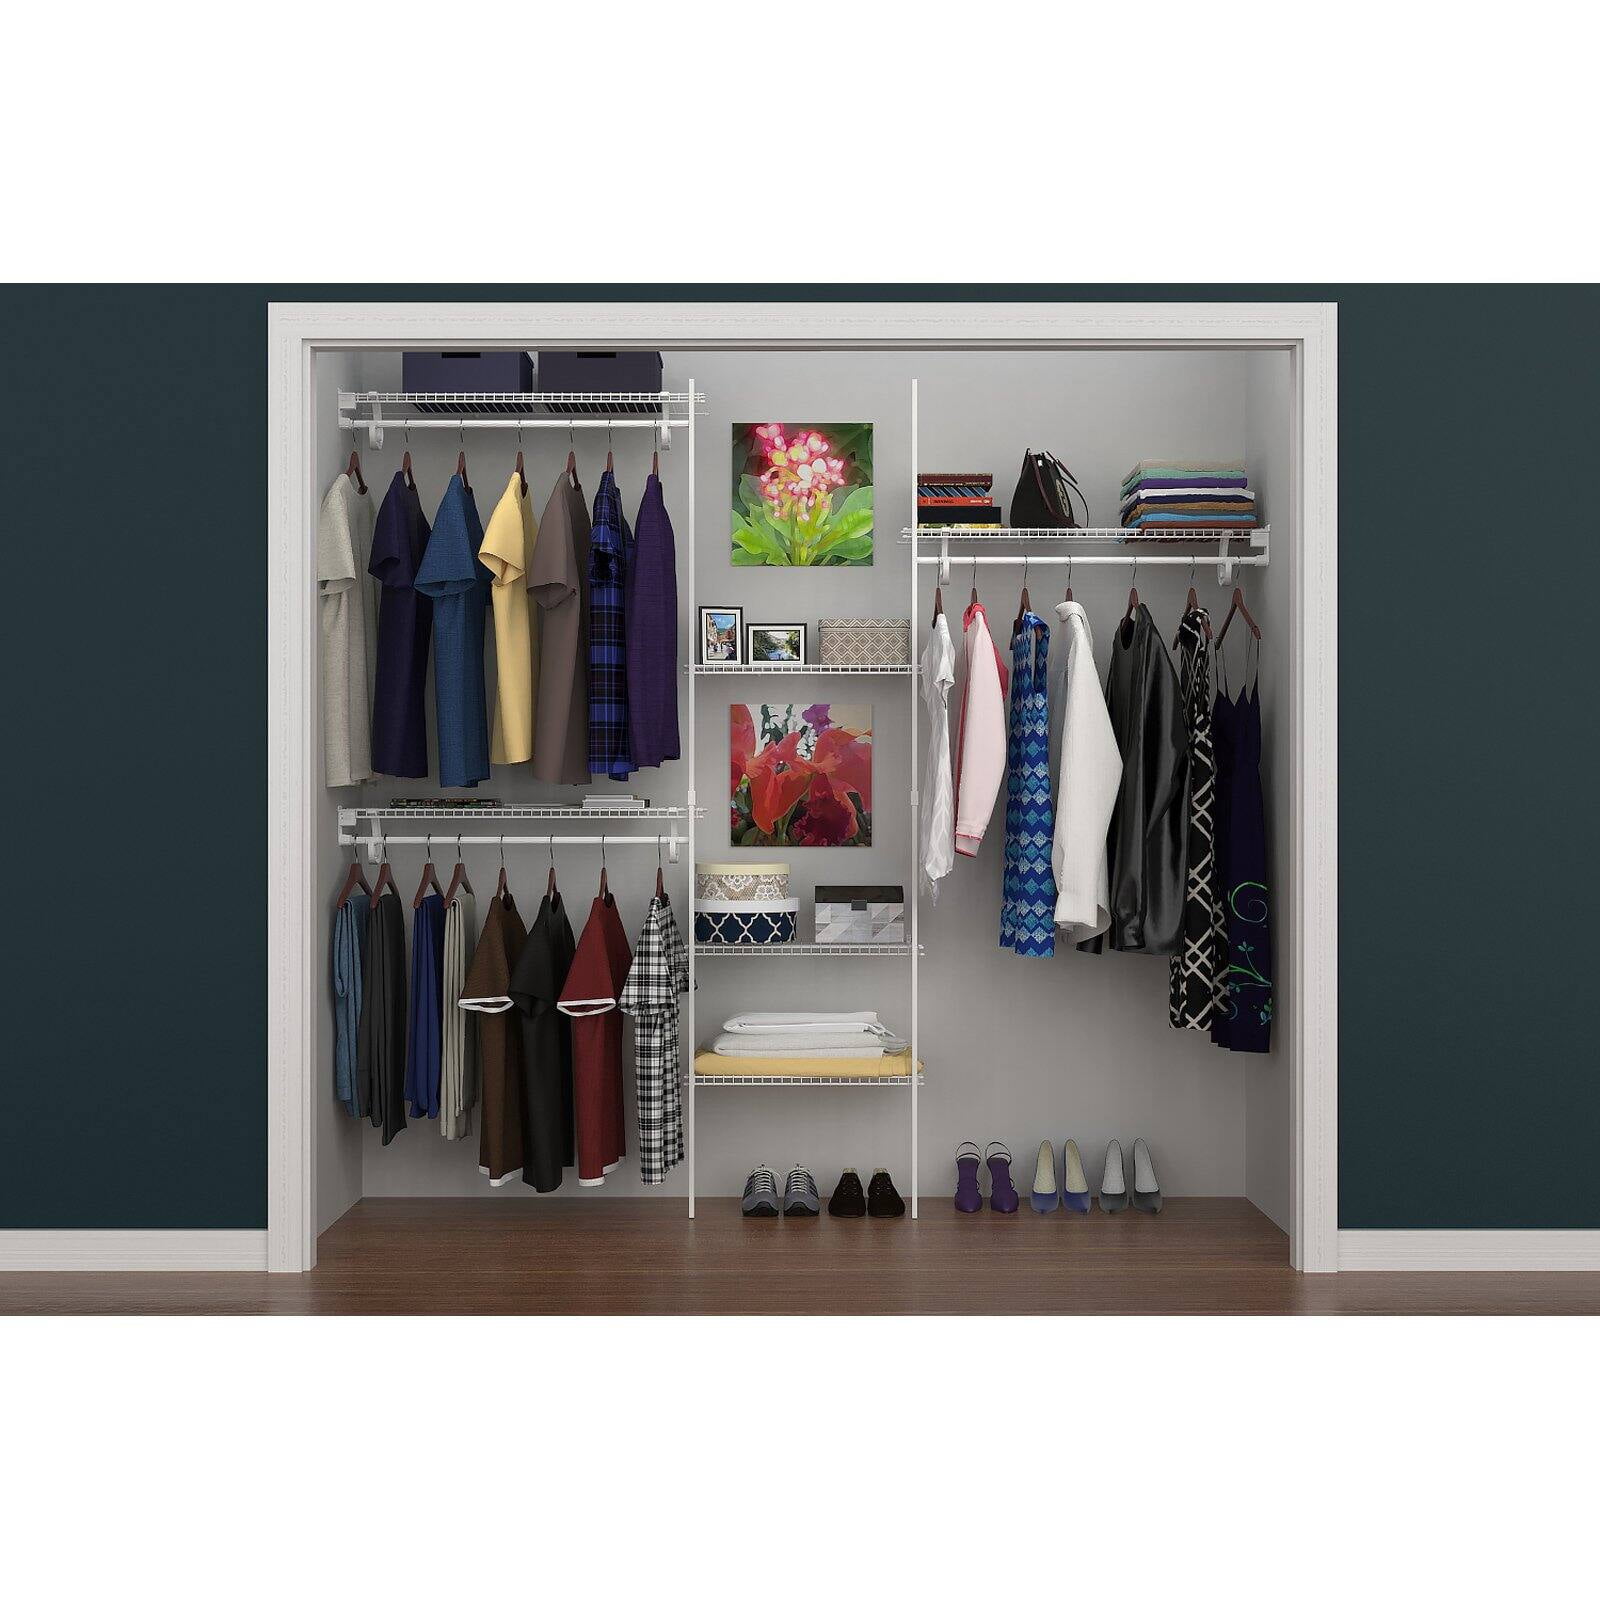 ClosetMaid 1608 5ft. to 8 ft. Closet Organizer Kit